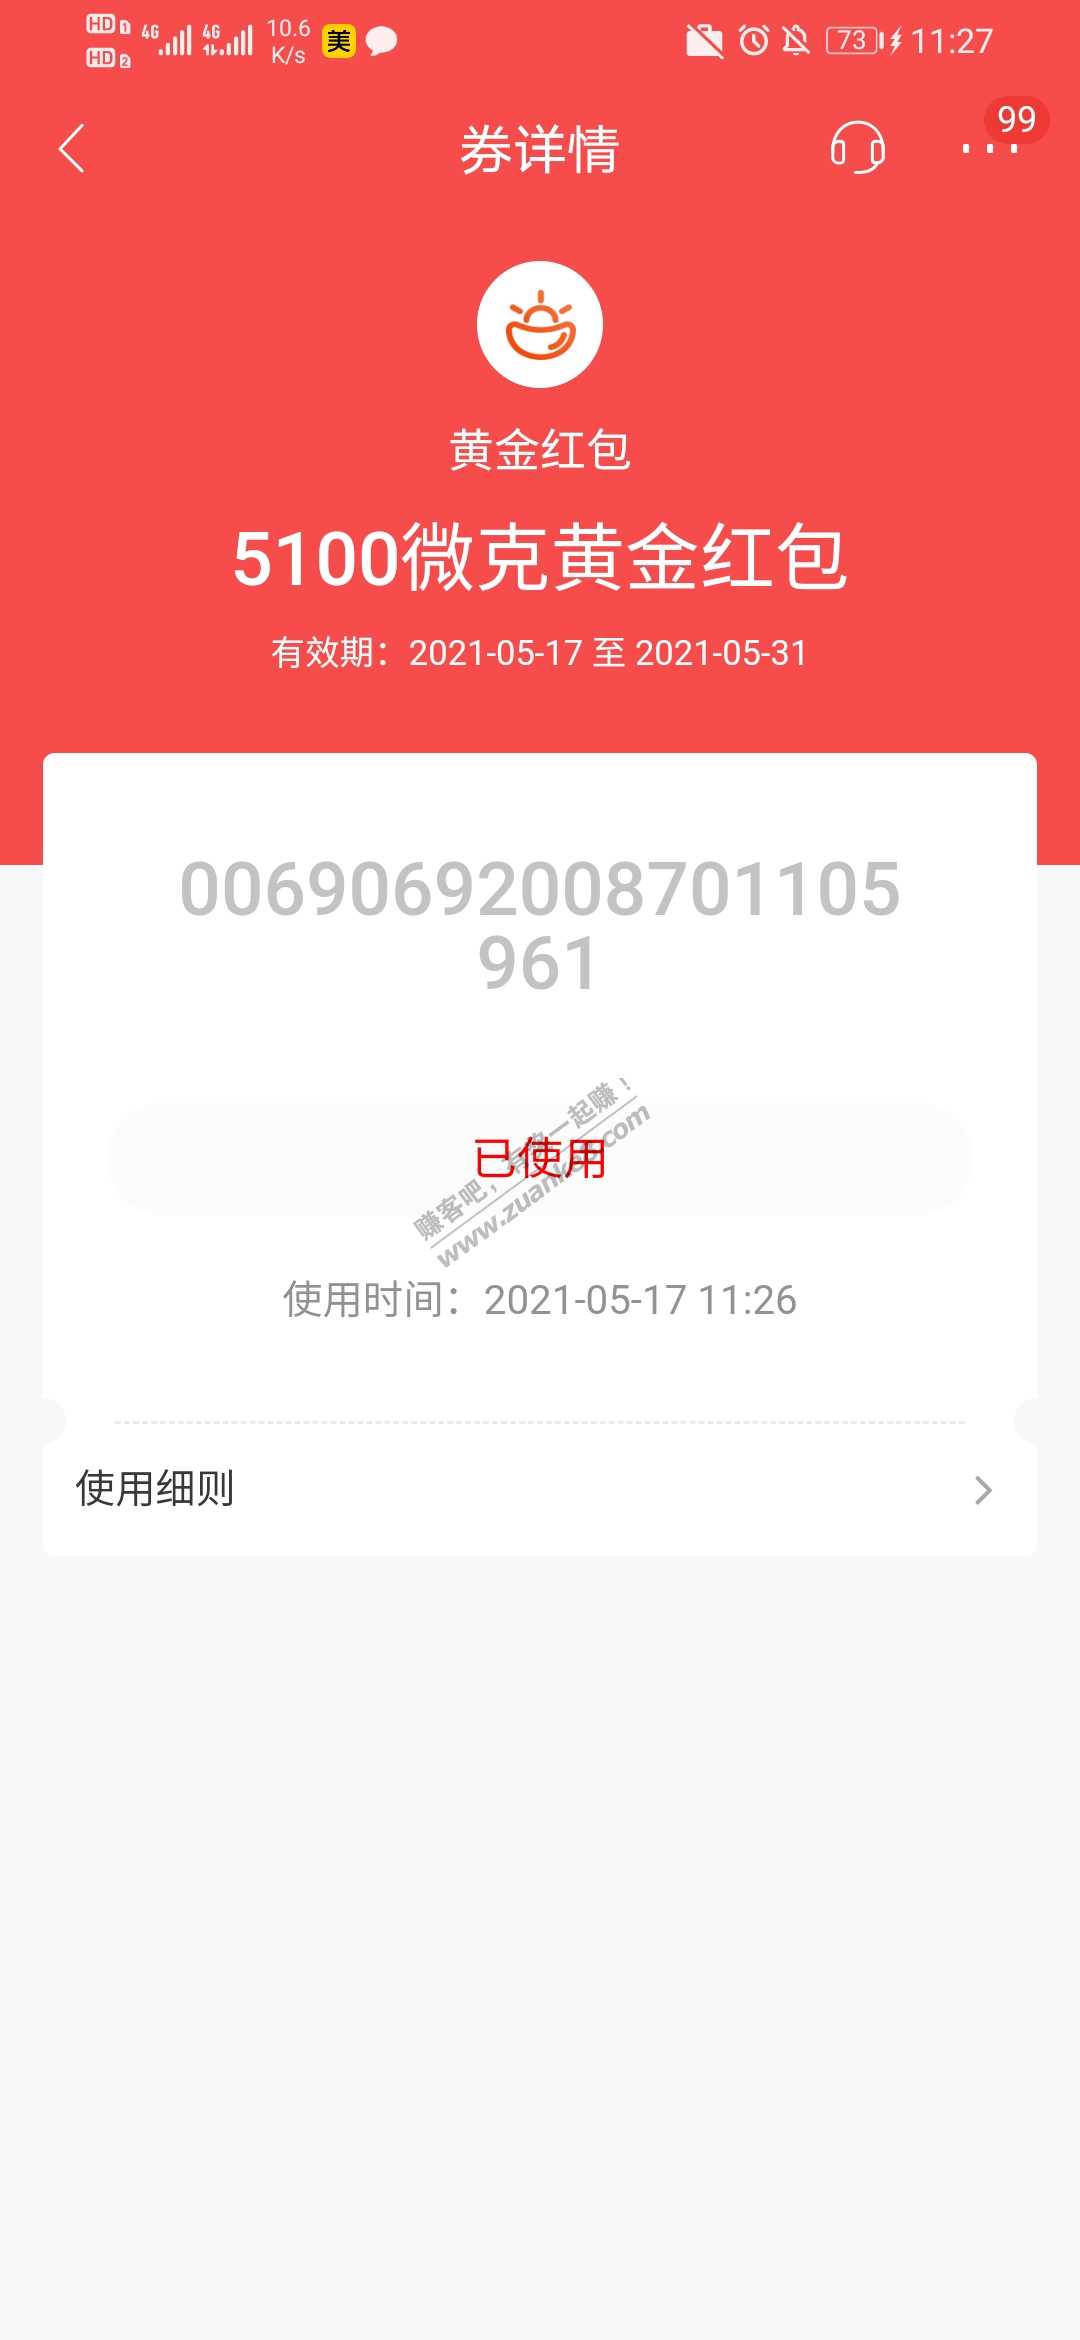 招商银行预约直播抽500~5100微克黄金红包-惠小助(52huixz.com)